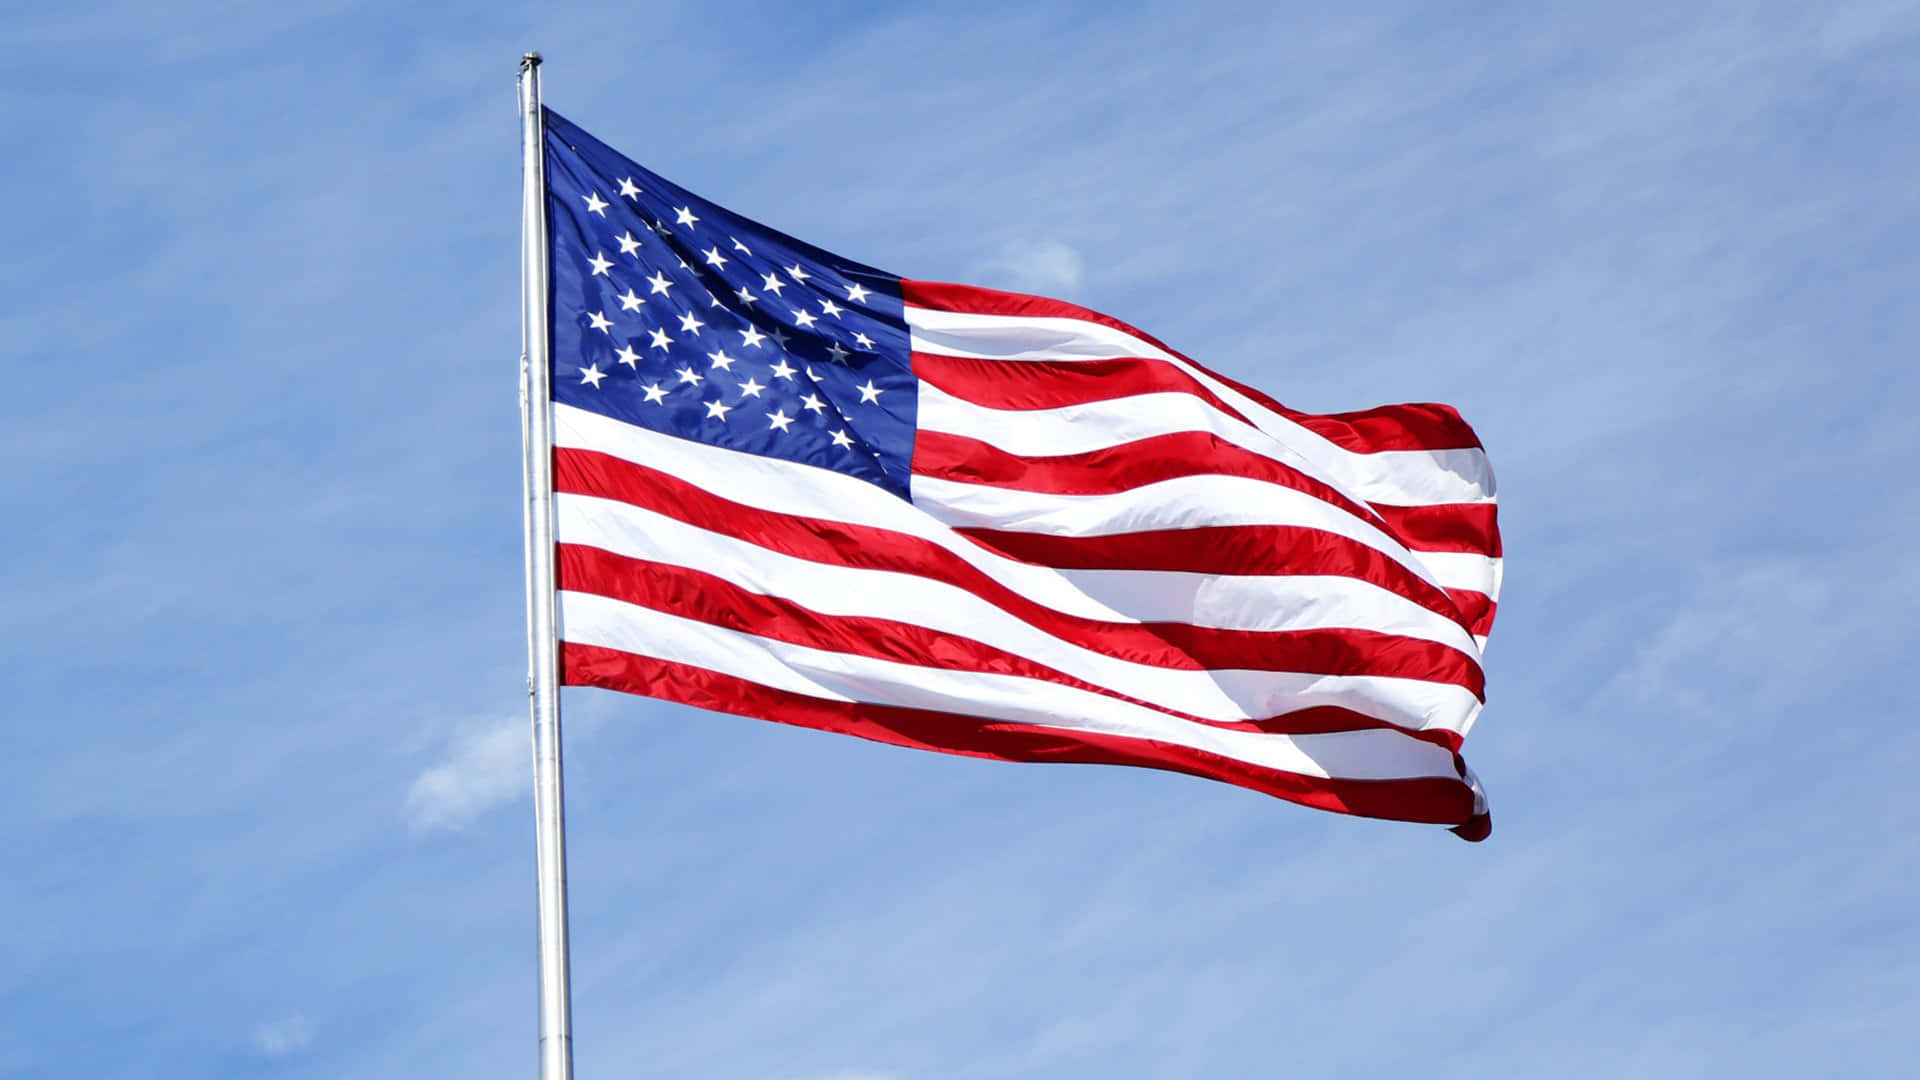 Unafotografia Dell'iconica Bandiera Americana Sventolante Contro Un Cielo Azzurro Limpido